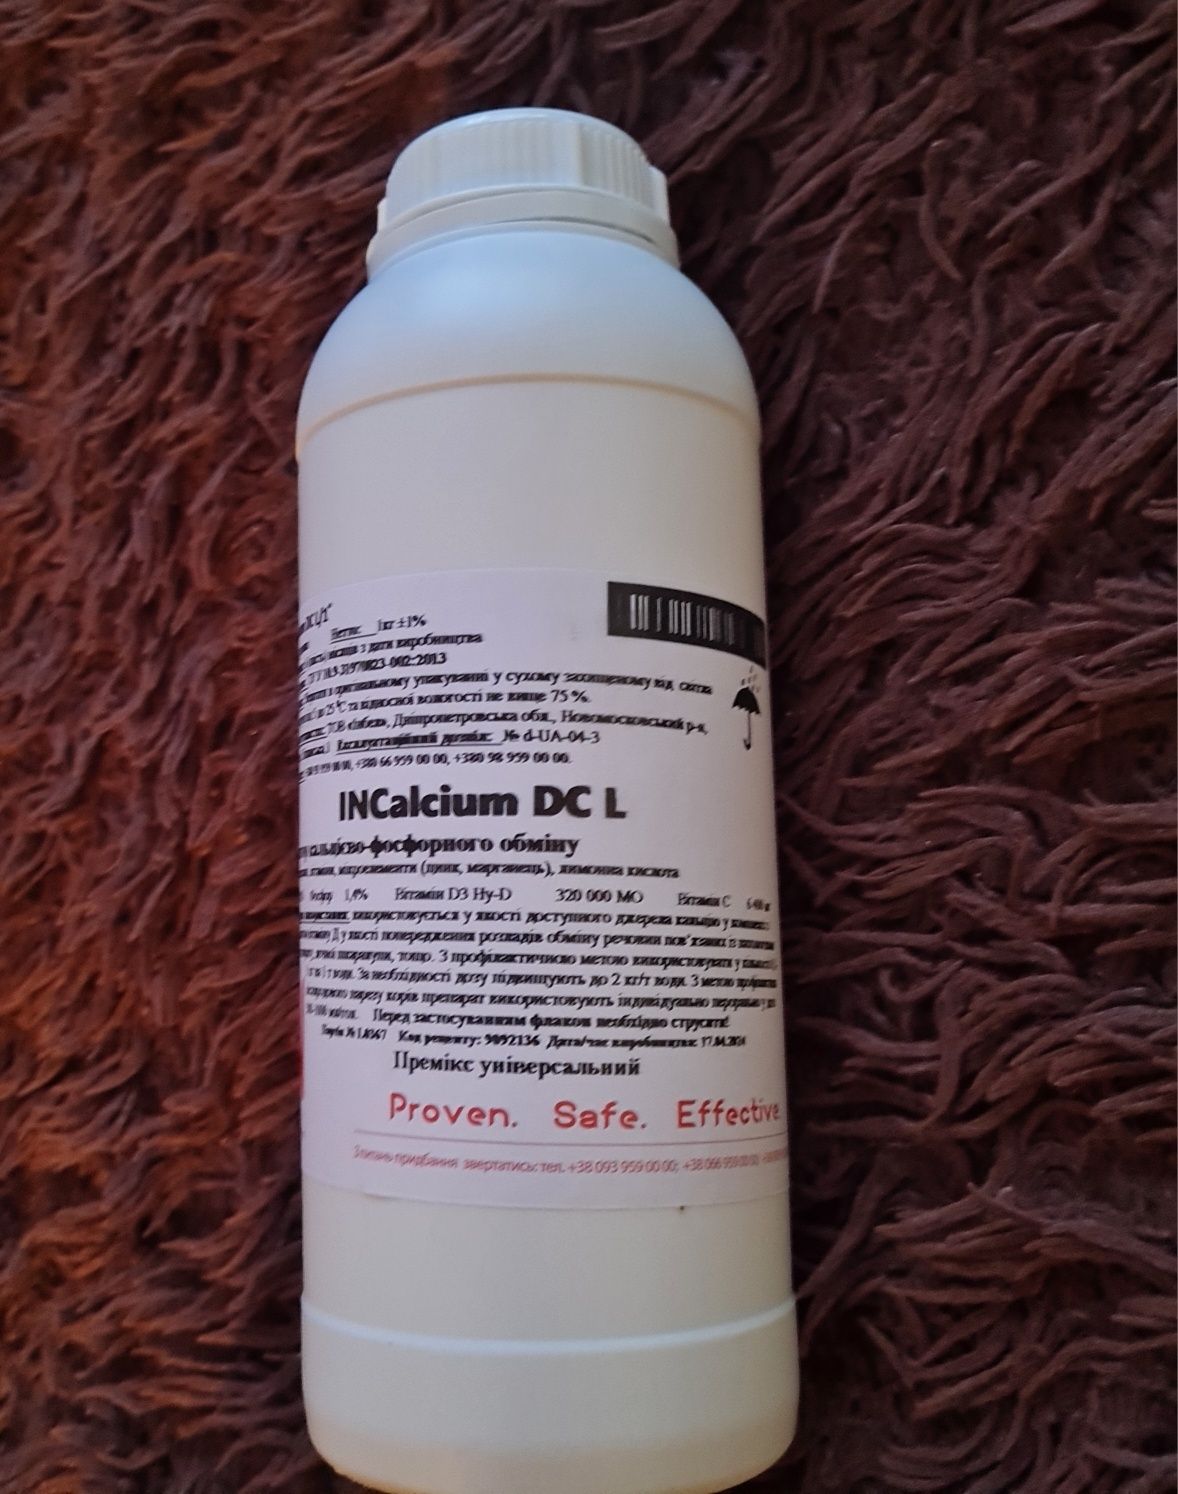 INCalcium DC L – комплексний оральний препарат, який застосовується дл